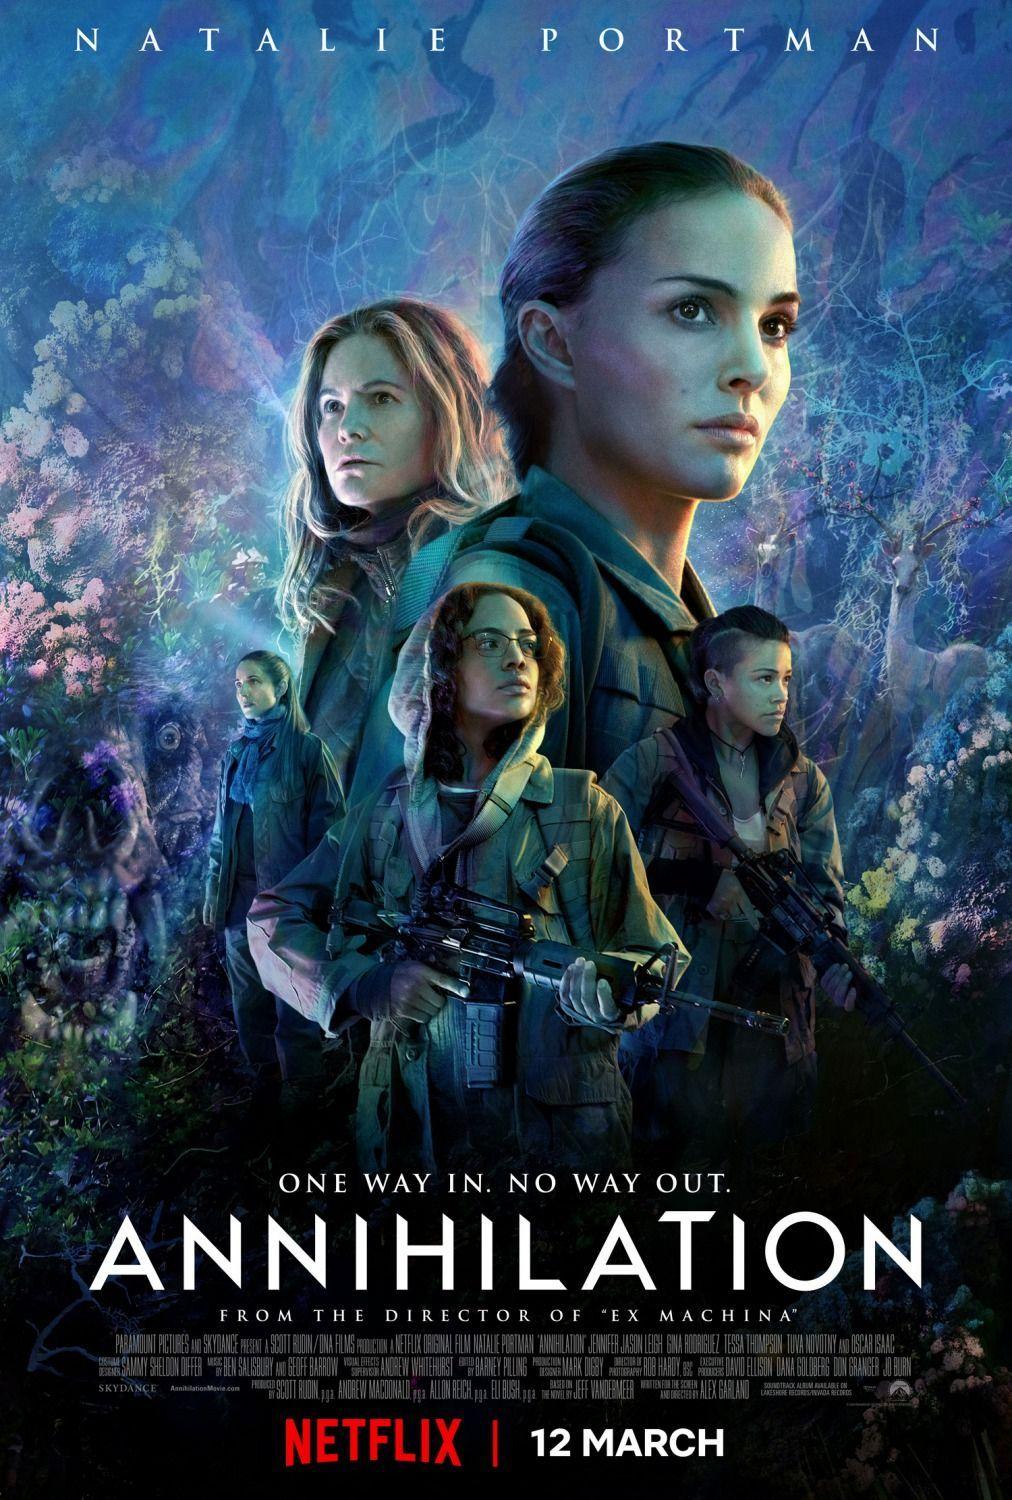 Annihilation (Netflix Poster). Movies TV In 2018